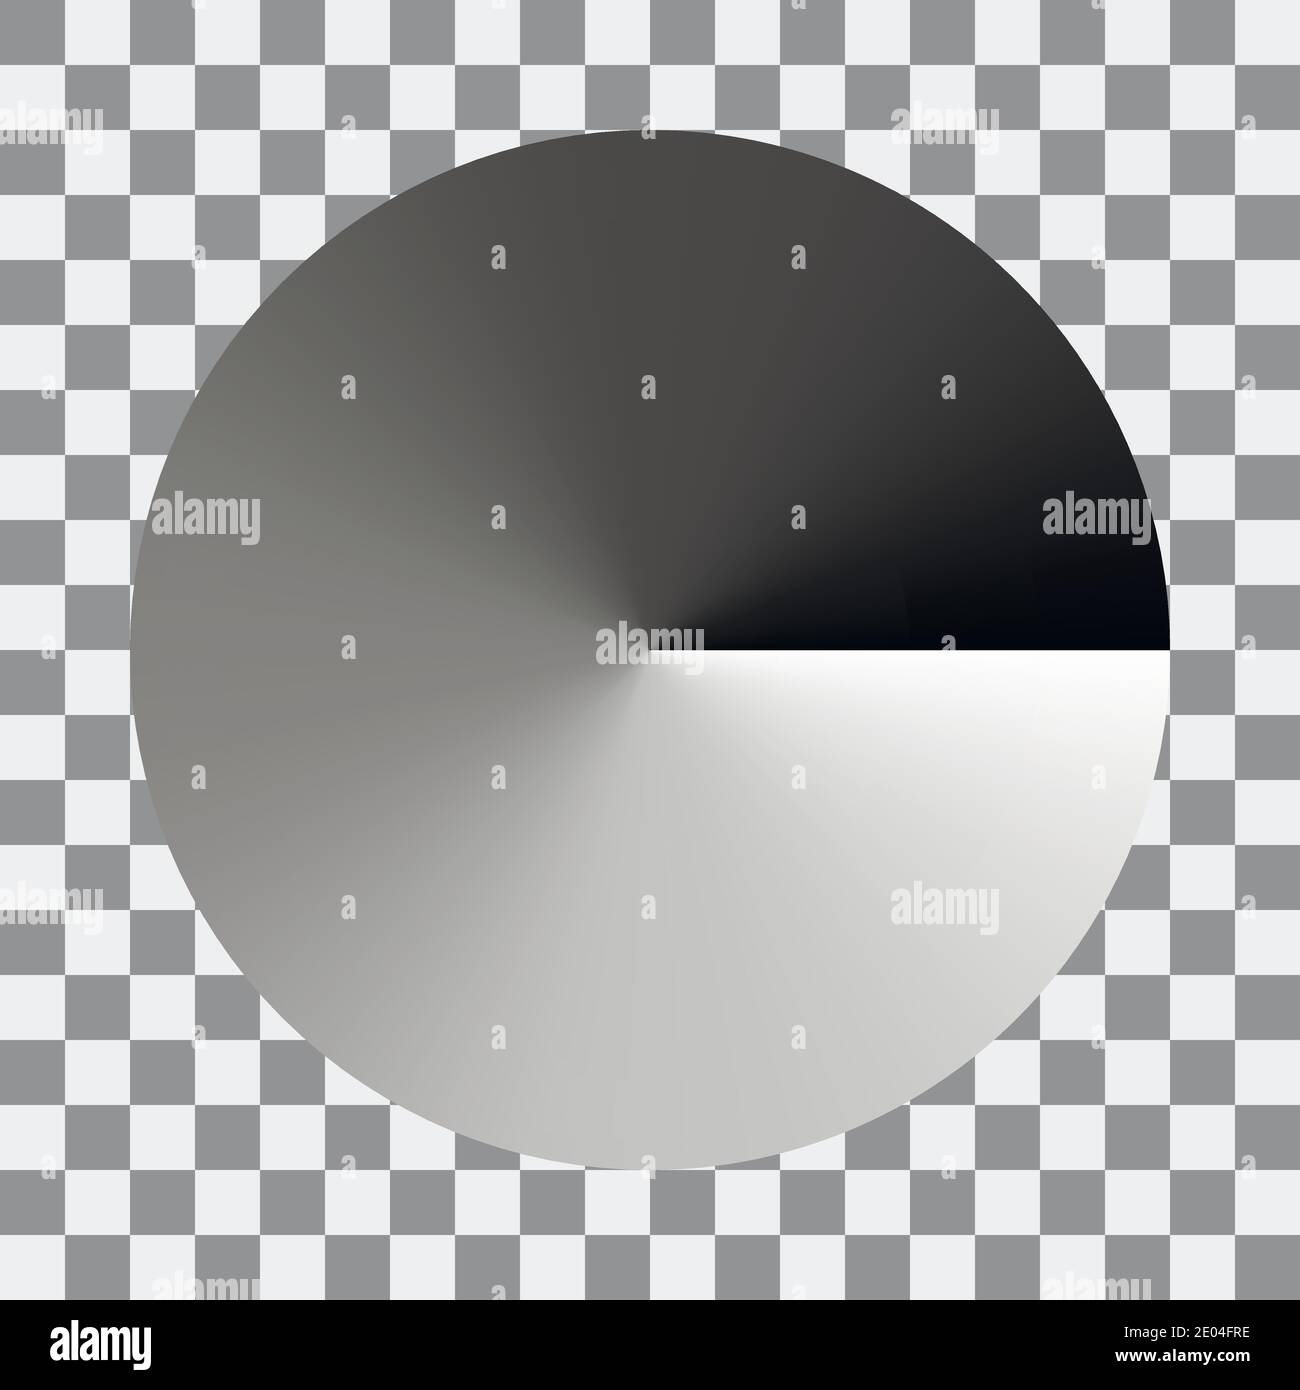 Dégradé circulaire monochrome dégradé de couleur gris du noir au blanc, cercle vectoriel de motifs de spectre noir et blanc, dégradé de couleur grise Illustration de Vecteur